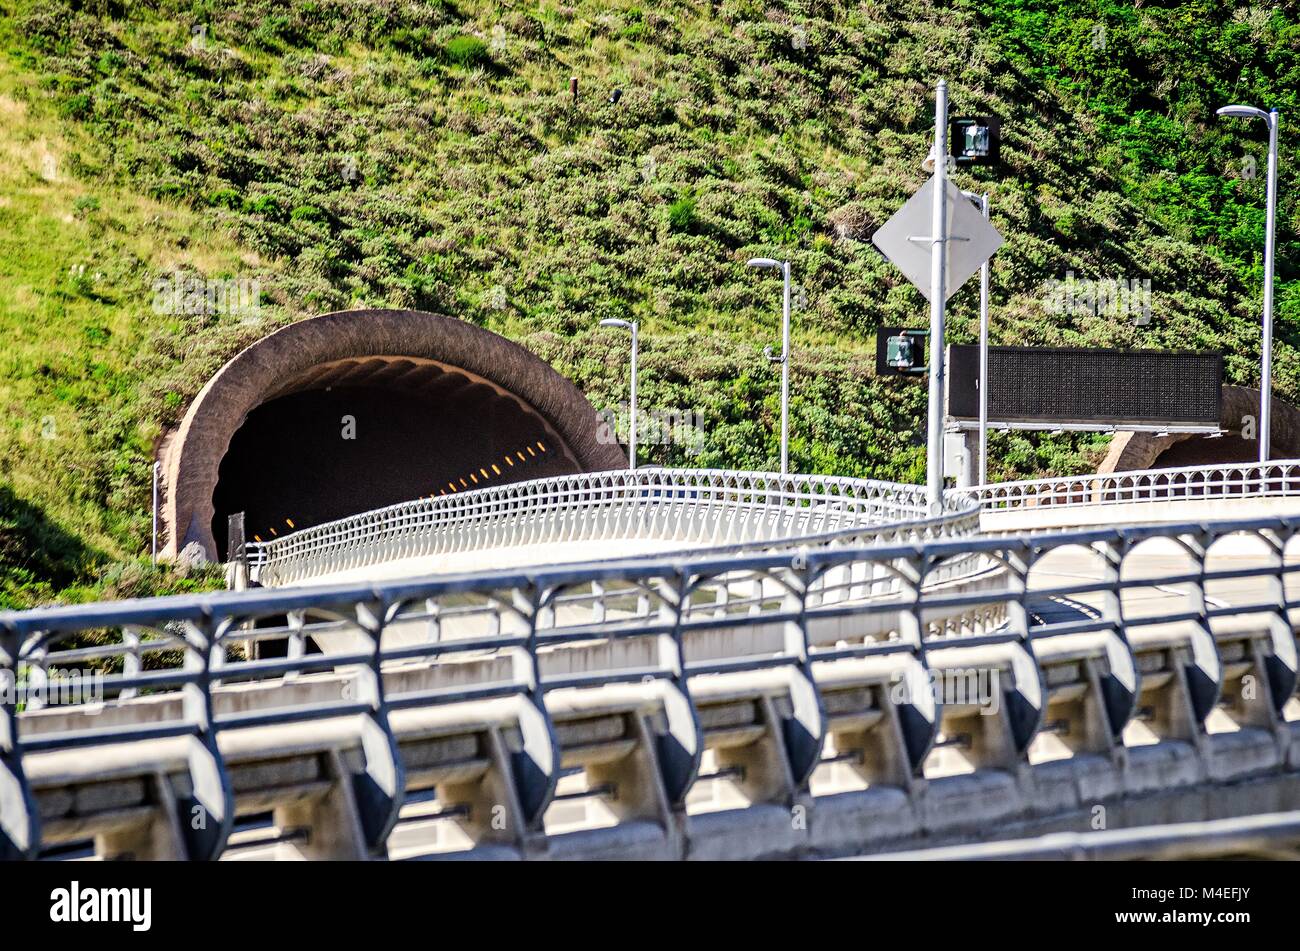 cabrillo highway tunnel near california pacific coast Stock Photo